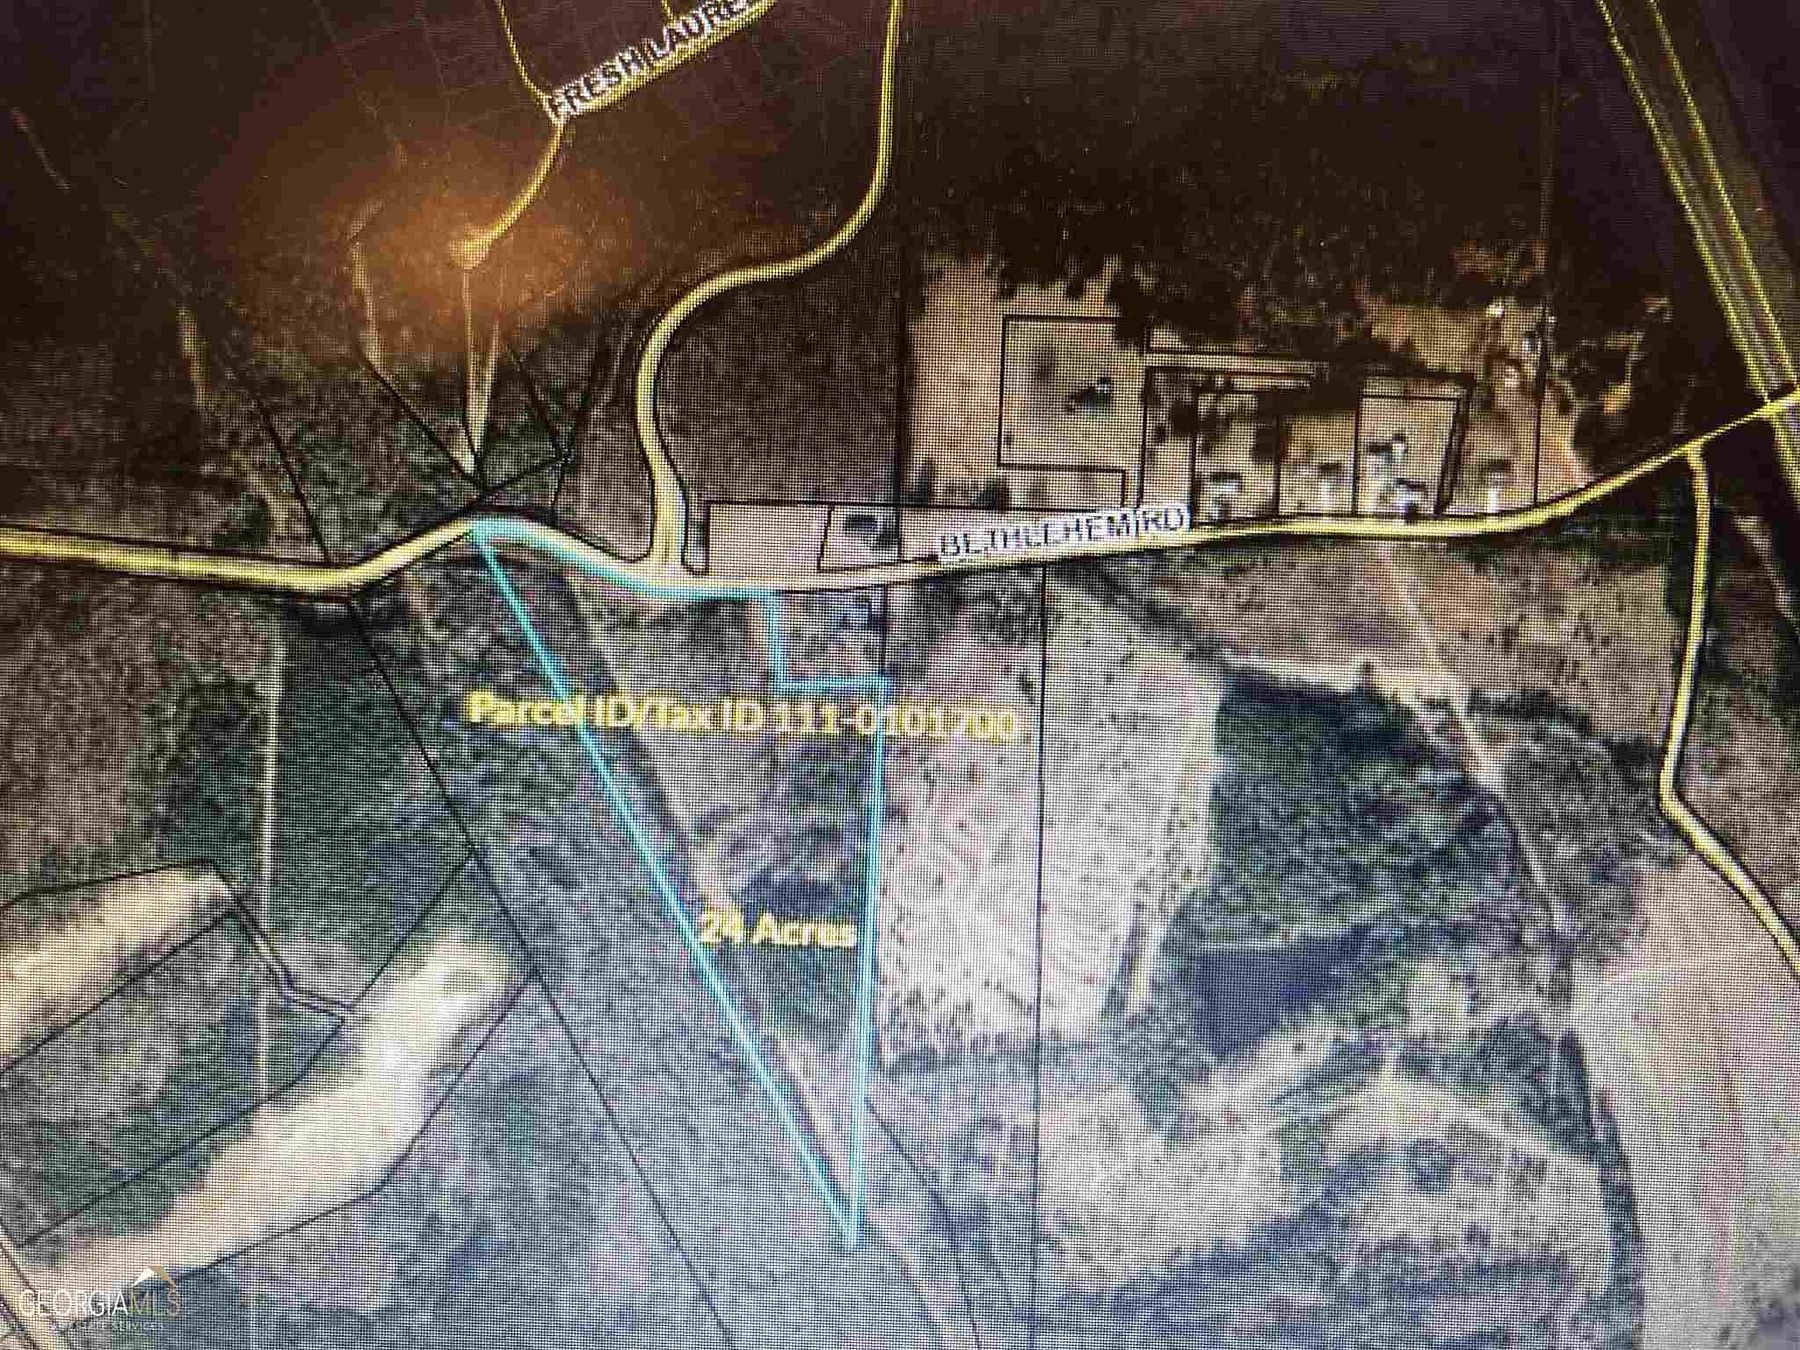 24.8 Acres of Land for Sale in Locust Grove, Georgia